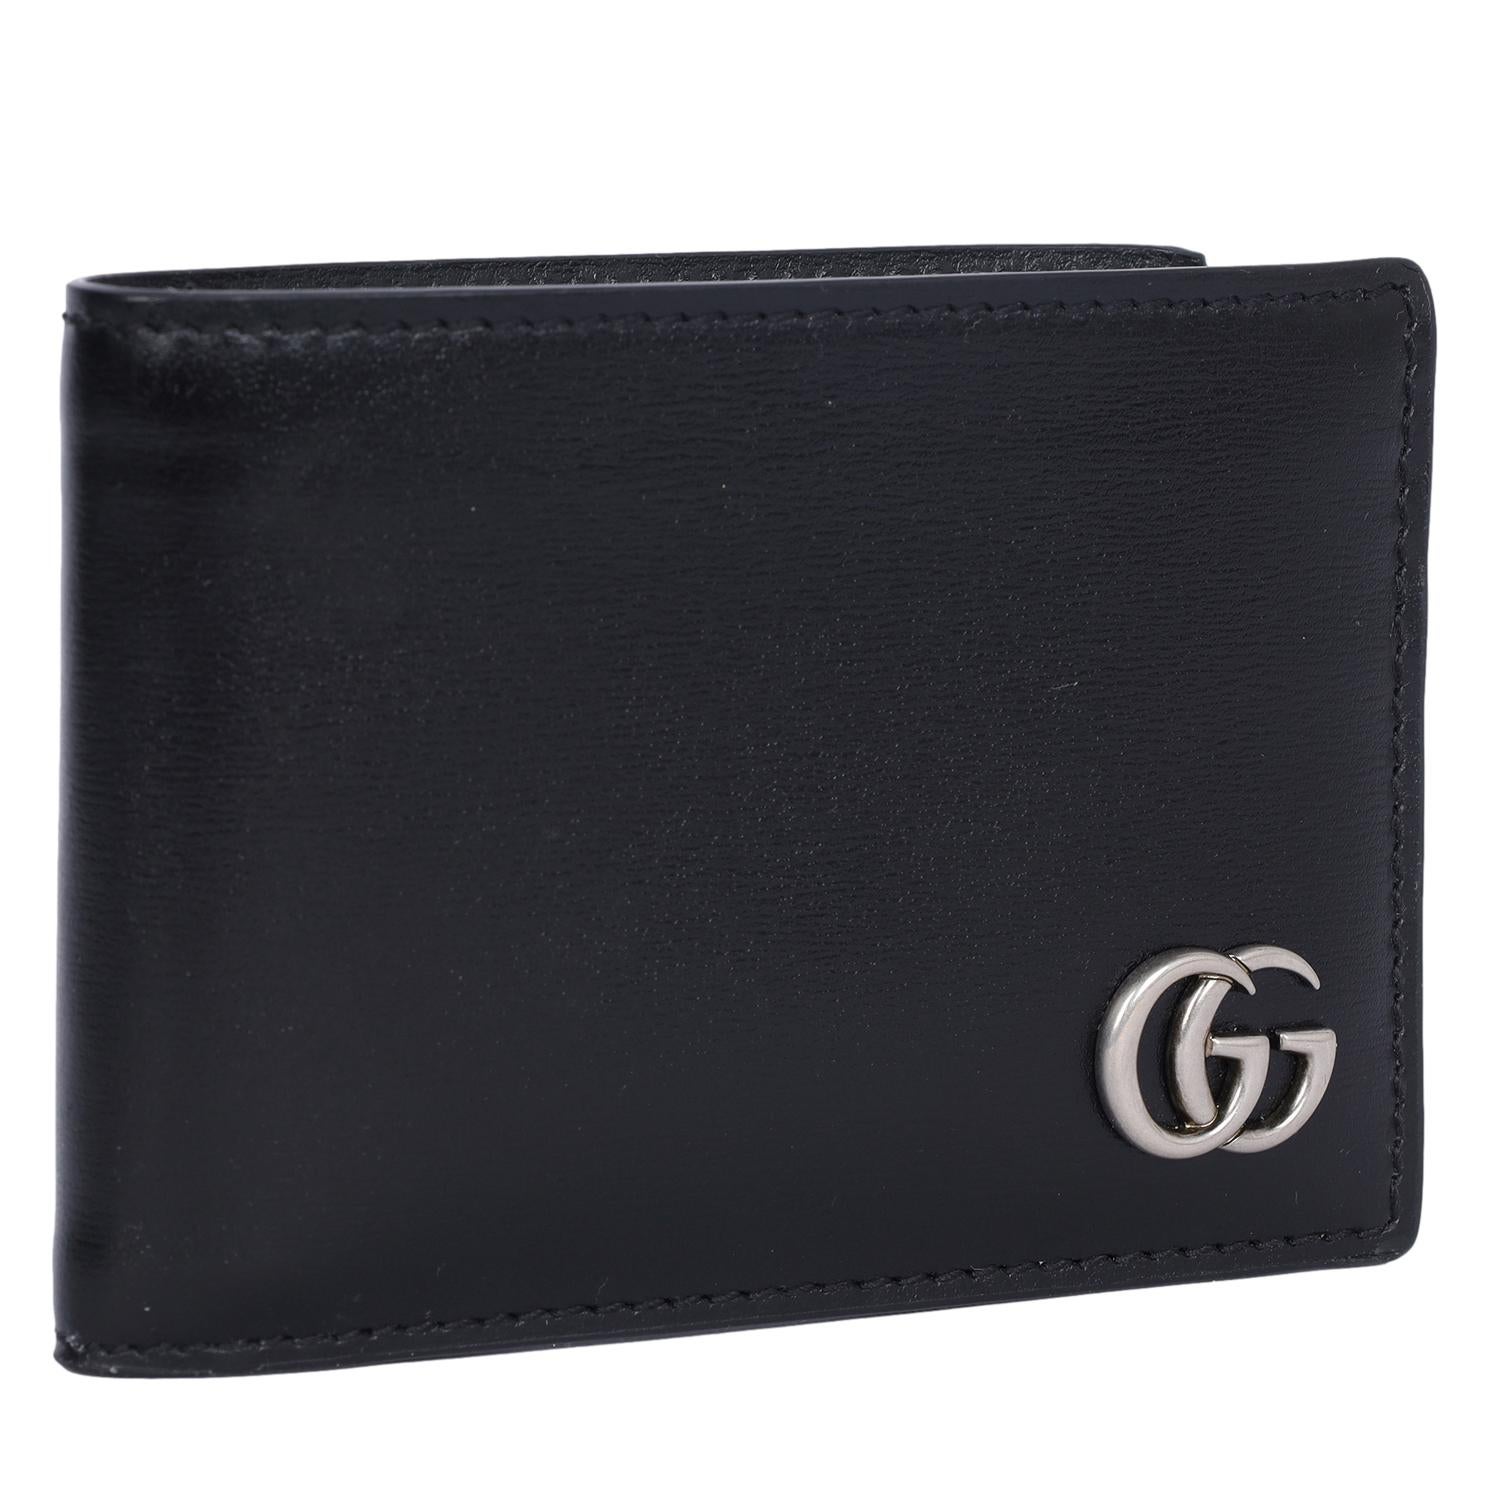 Authentische Gucci GG Marmont Bi-Fold Geldbörse aus schwarzem Leder. 

Eine schlanke Brieftasche aus schwarzem Glattleder. Die Double G-Hardware im Palladium-Ton verleiht dem Portemonnaie einen dezenten Logo-Twist. Es gibt 4 Kartenfächer und ein